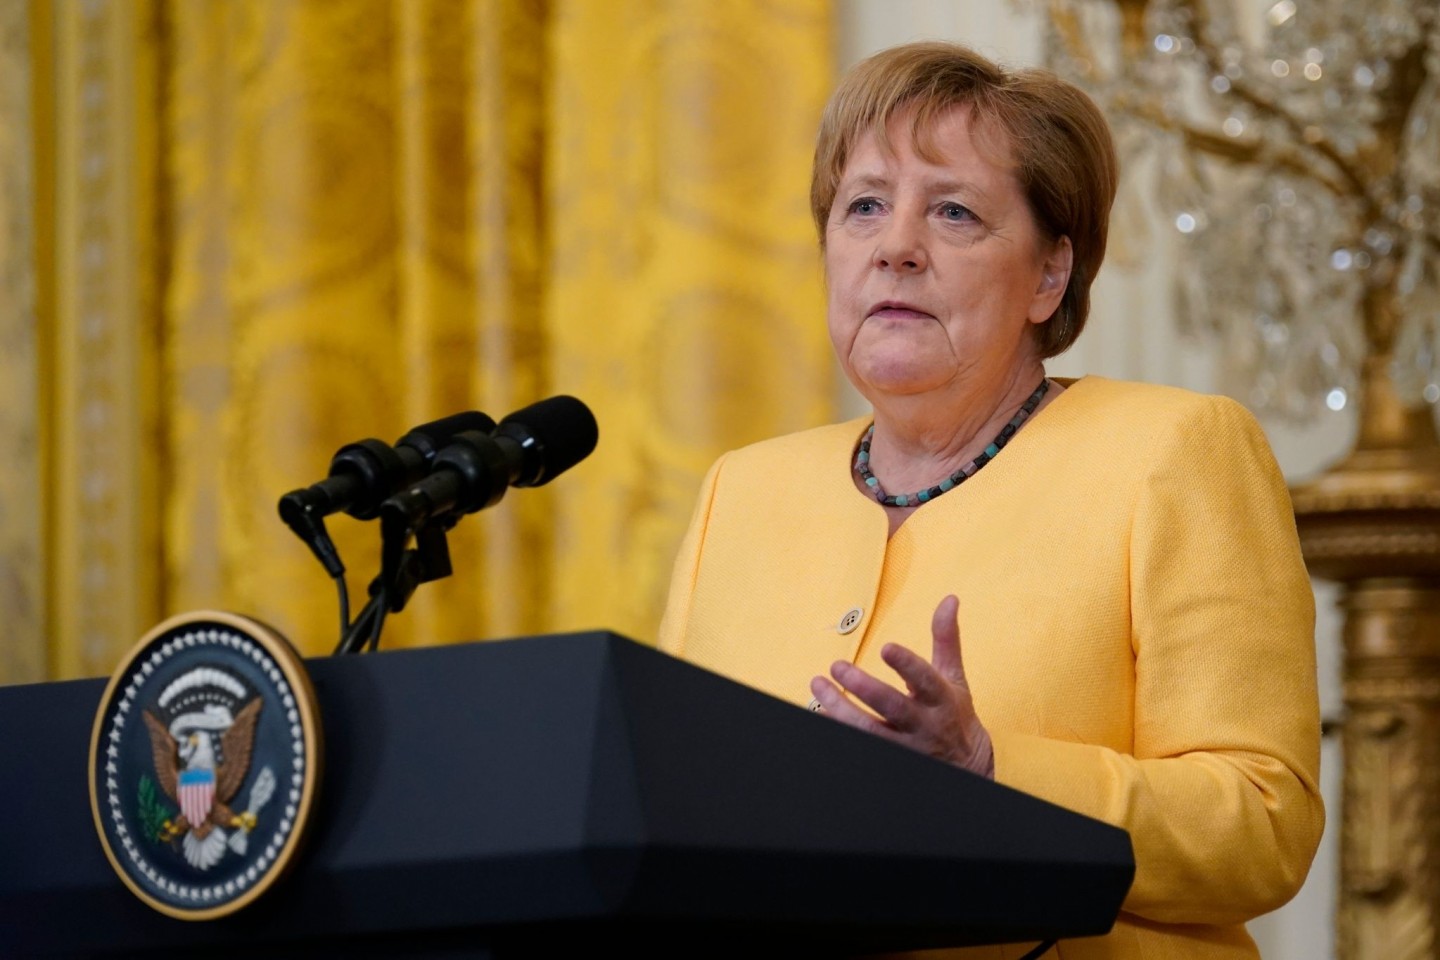 Bundeskanzlerin Angela Merkel spricht während einer Pressekonferenz im Weißen Haus.